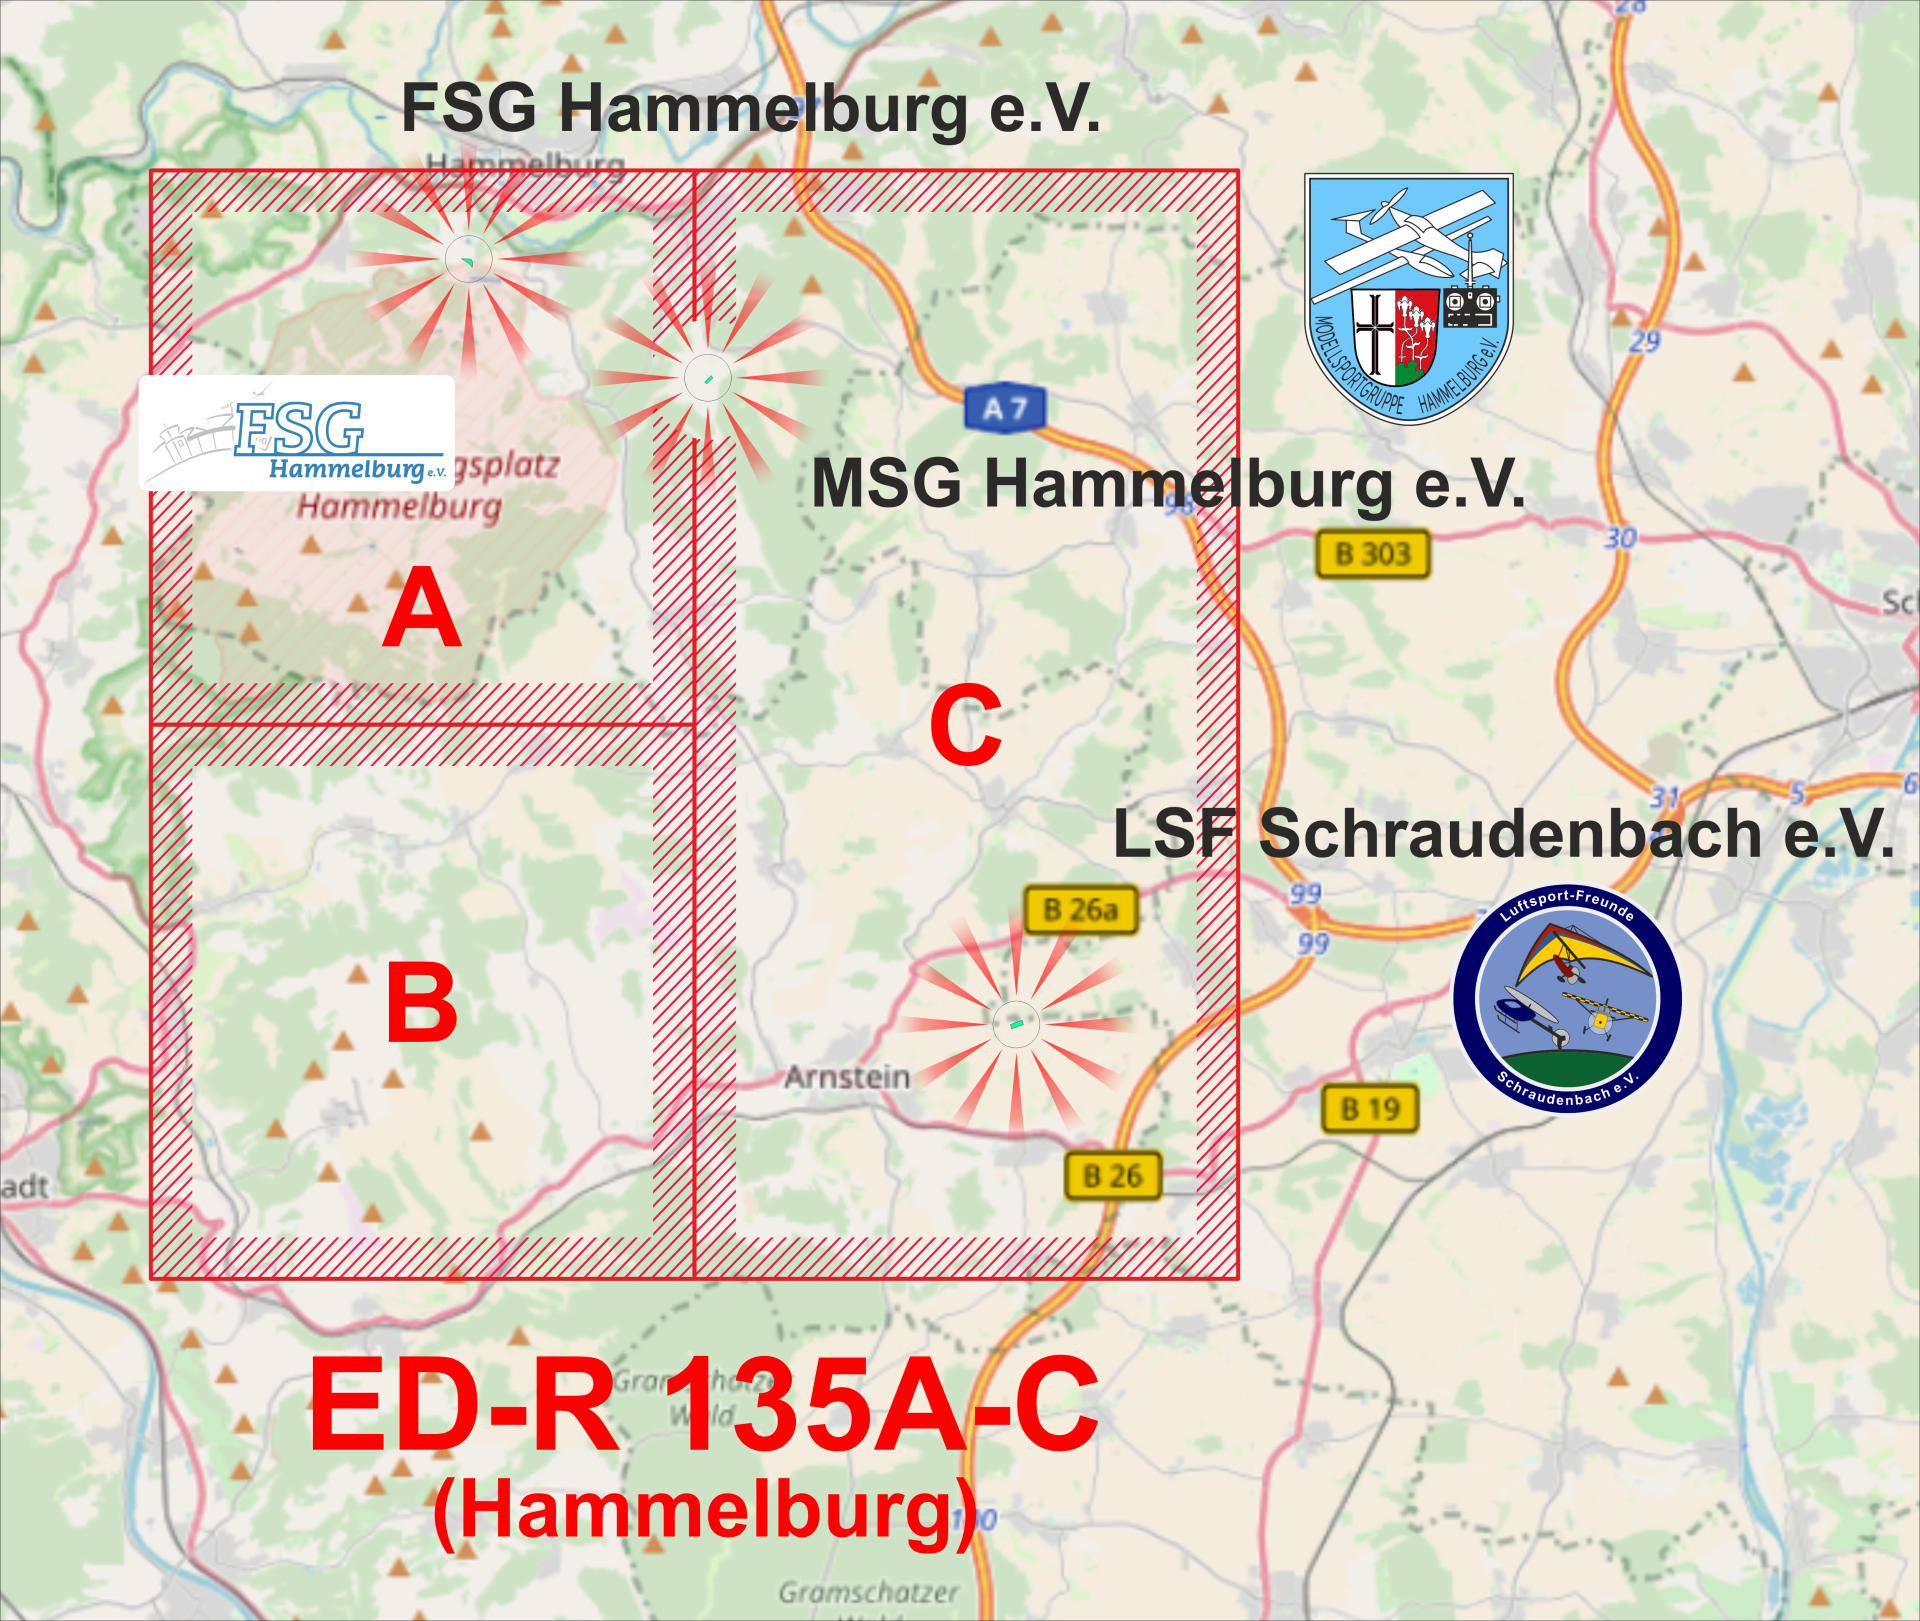 03-BY - BAYERN mit ED-R 135A-C (Hammelburg) + Vereine_5000.png